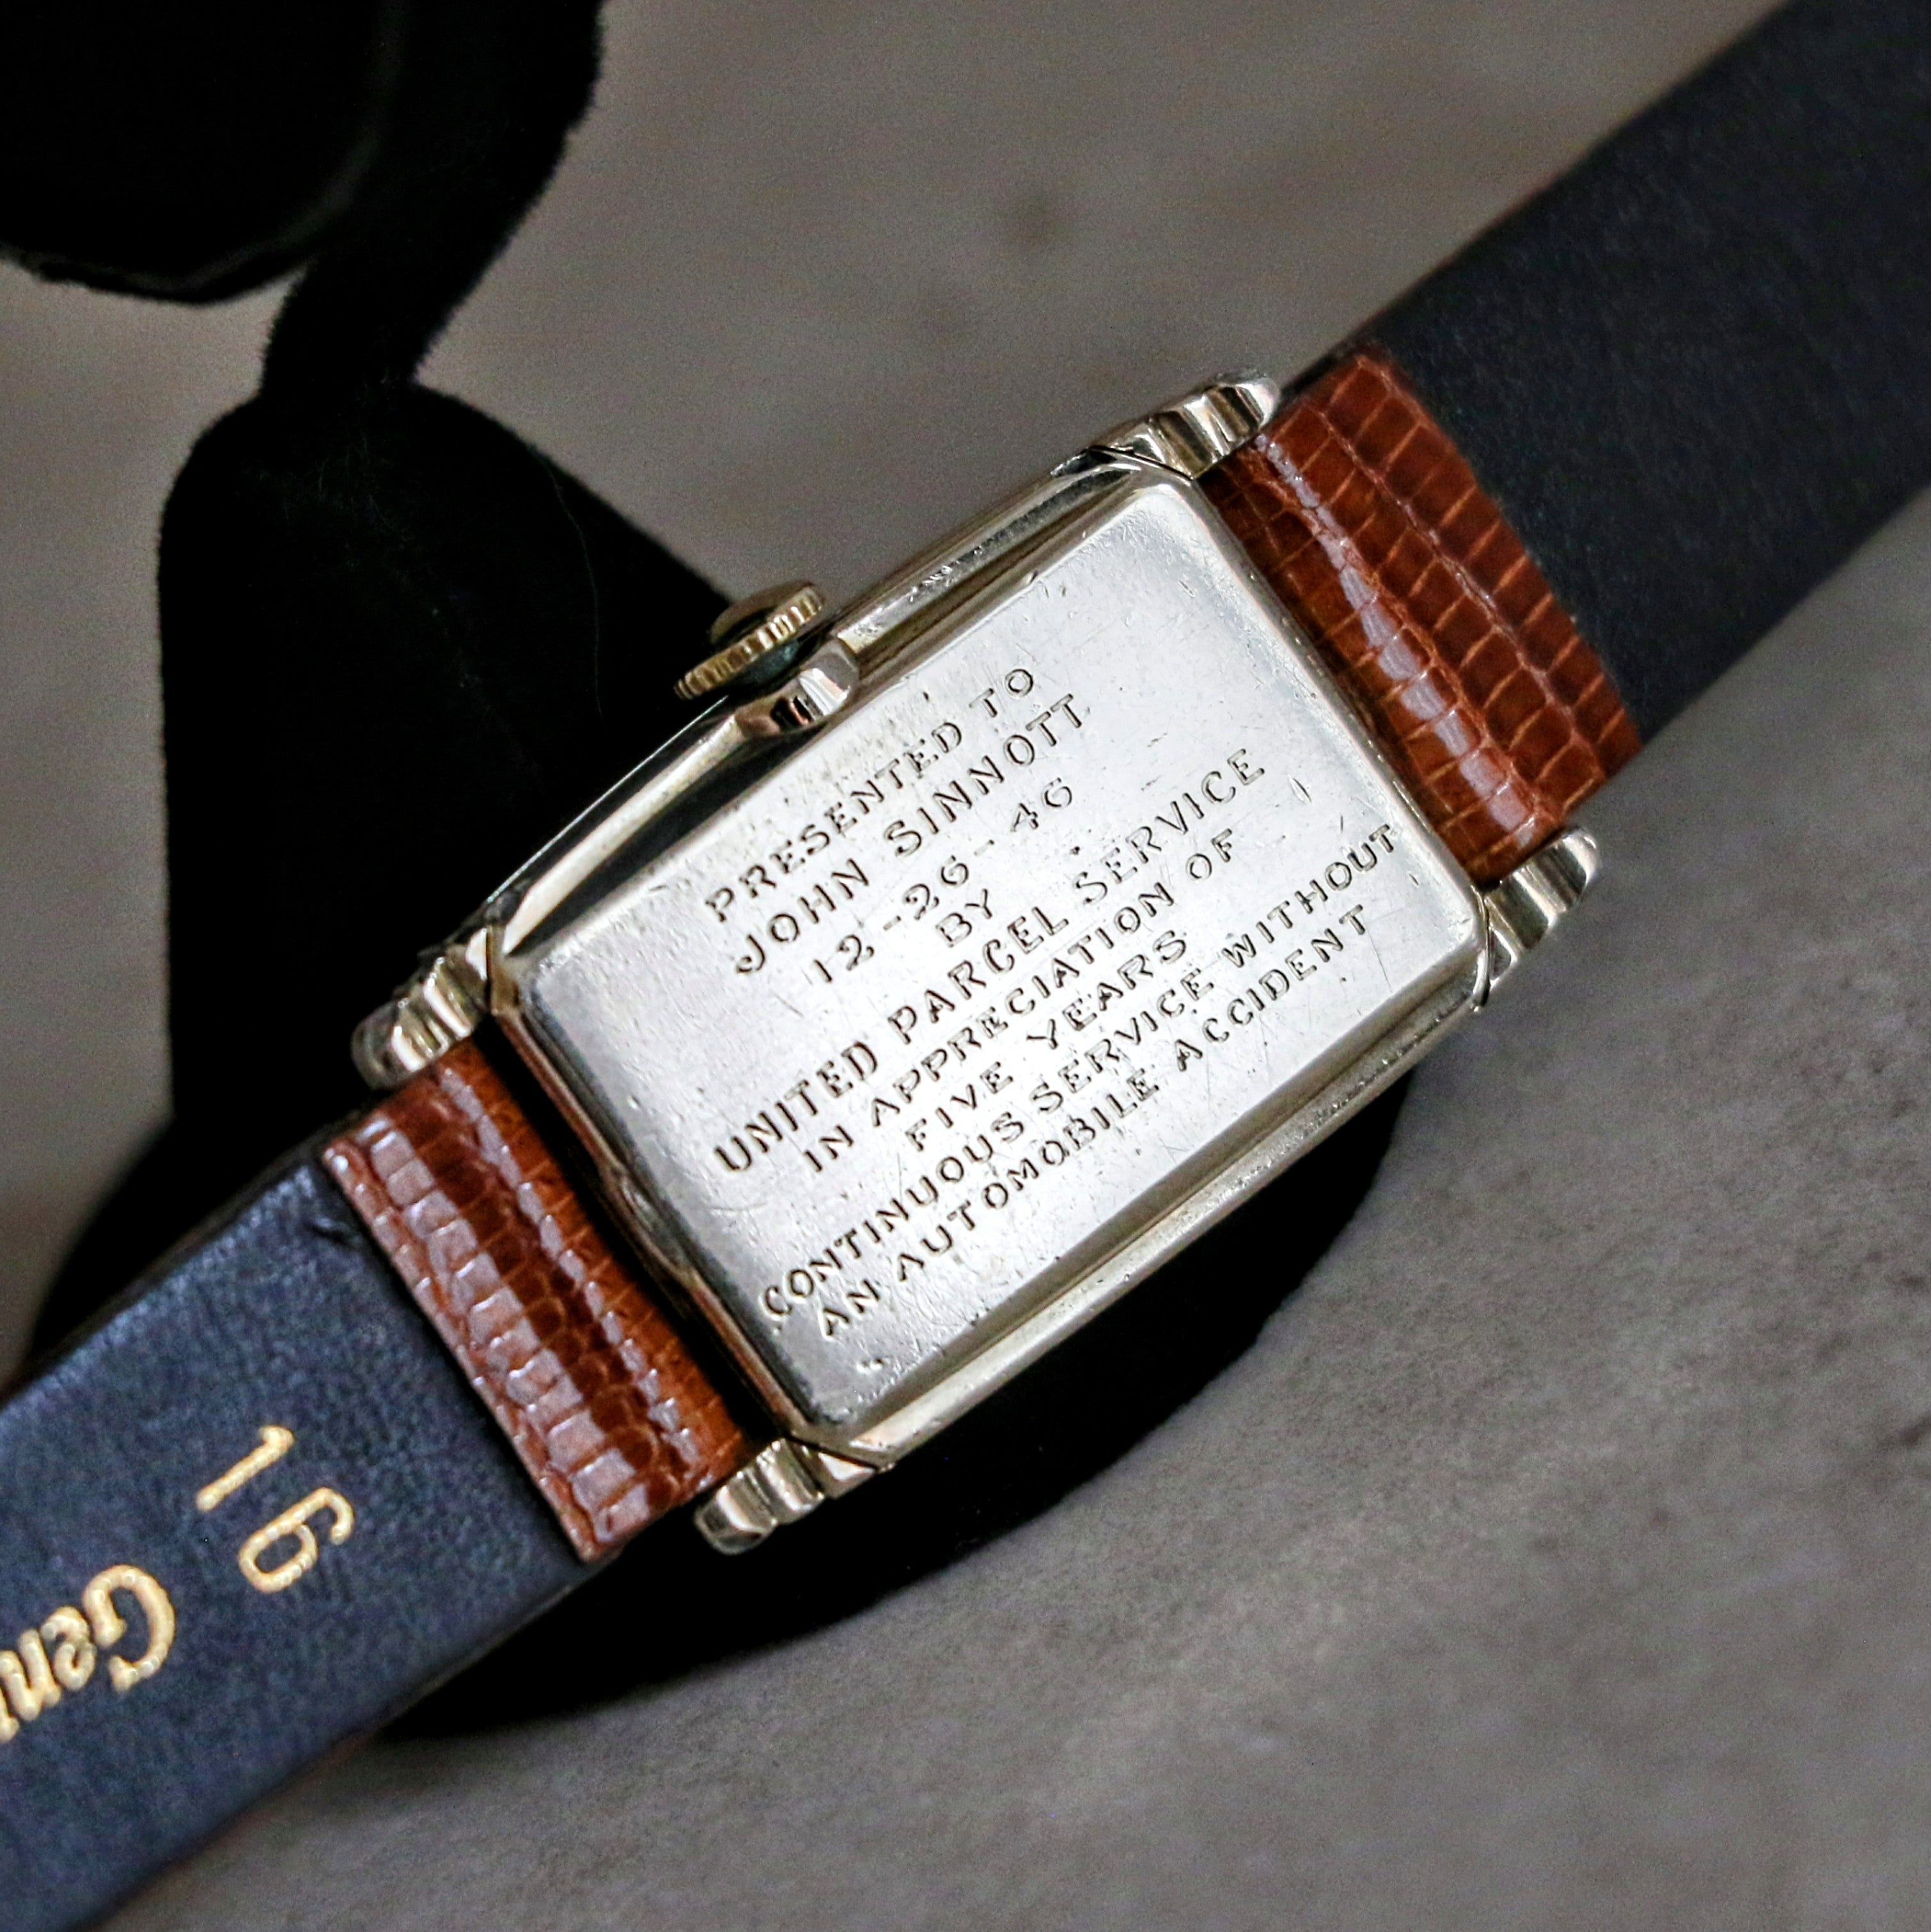 1946 HAMILTON Myron Wristwatch 10K Yellow G.F. Wristwatch U.S.A. Grade 980 Watch